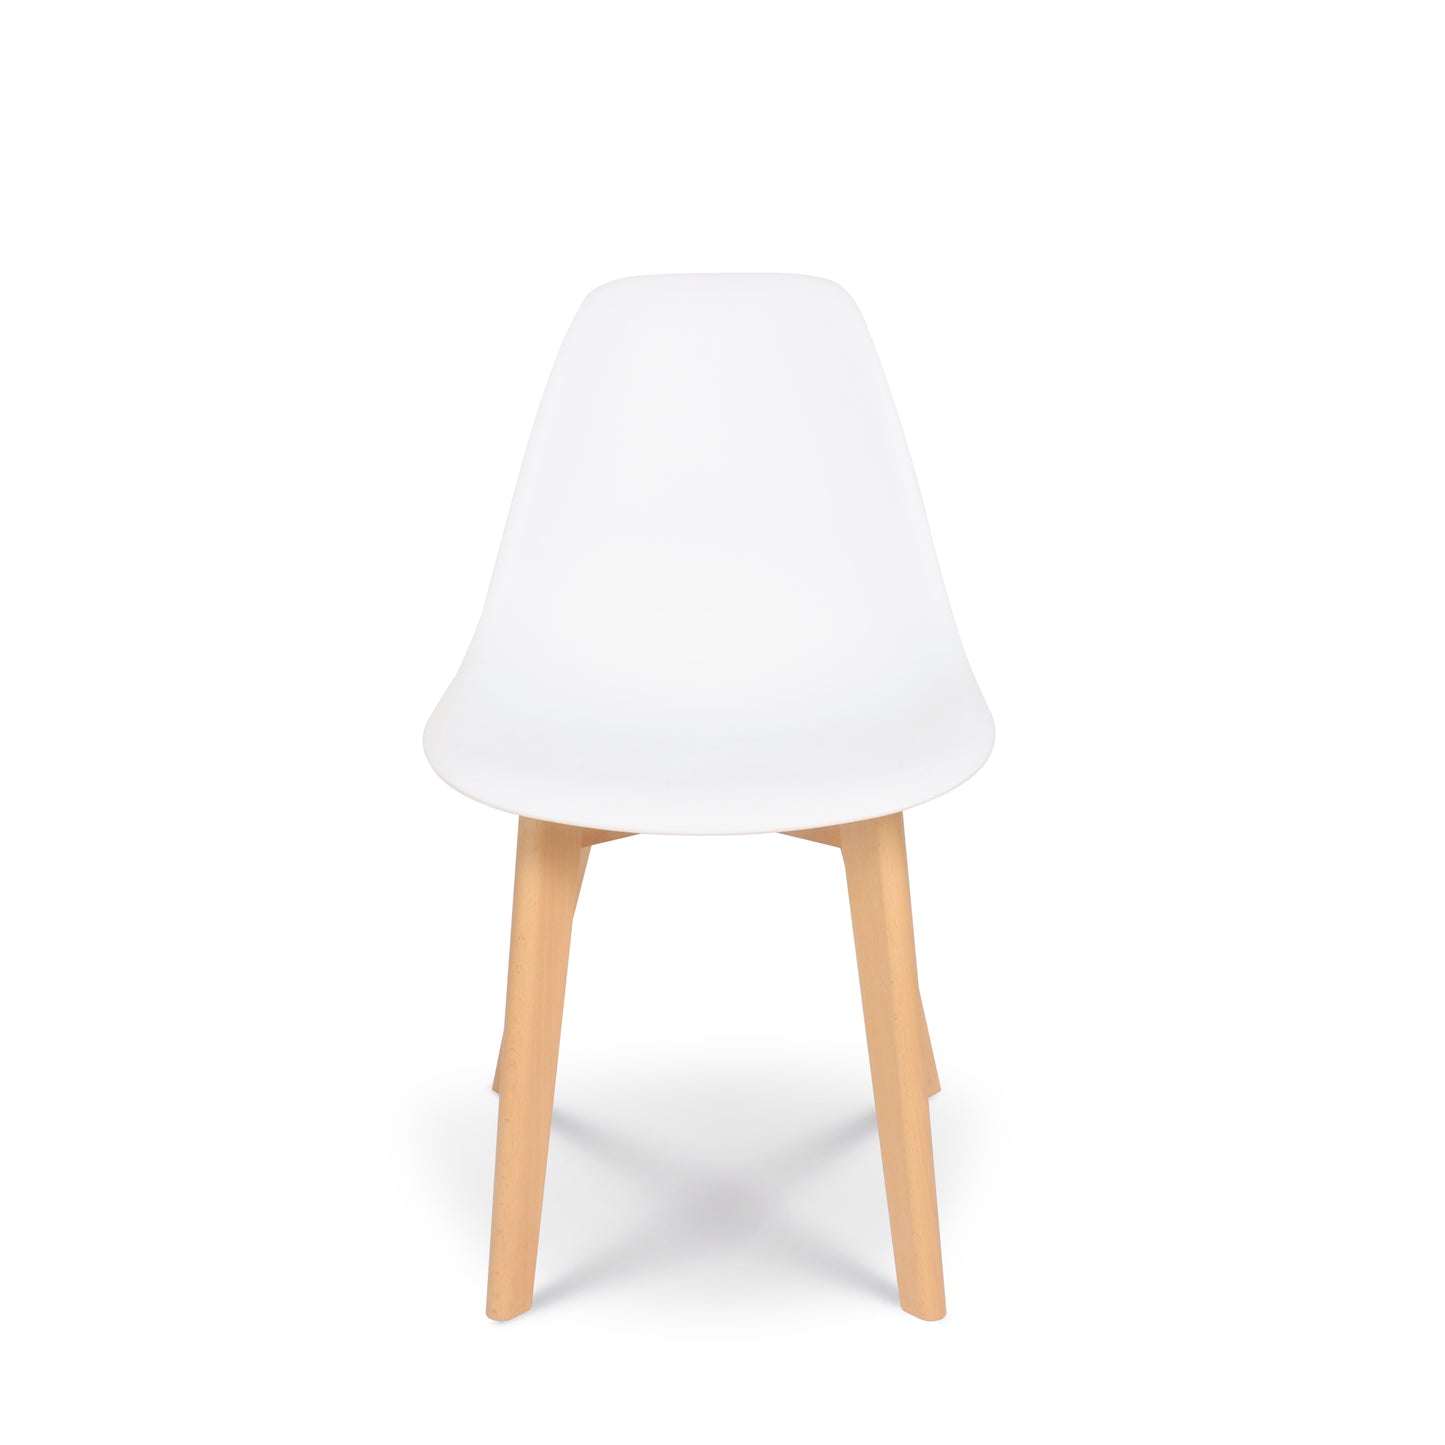 Lot de 4 chaises style scandinave modèle GABBY - Coque en résine blanche et pieds en bois naturel